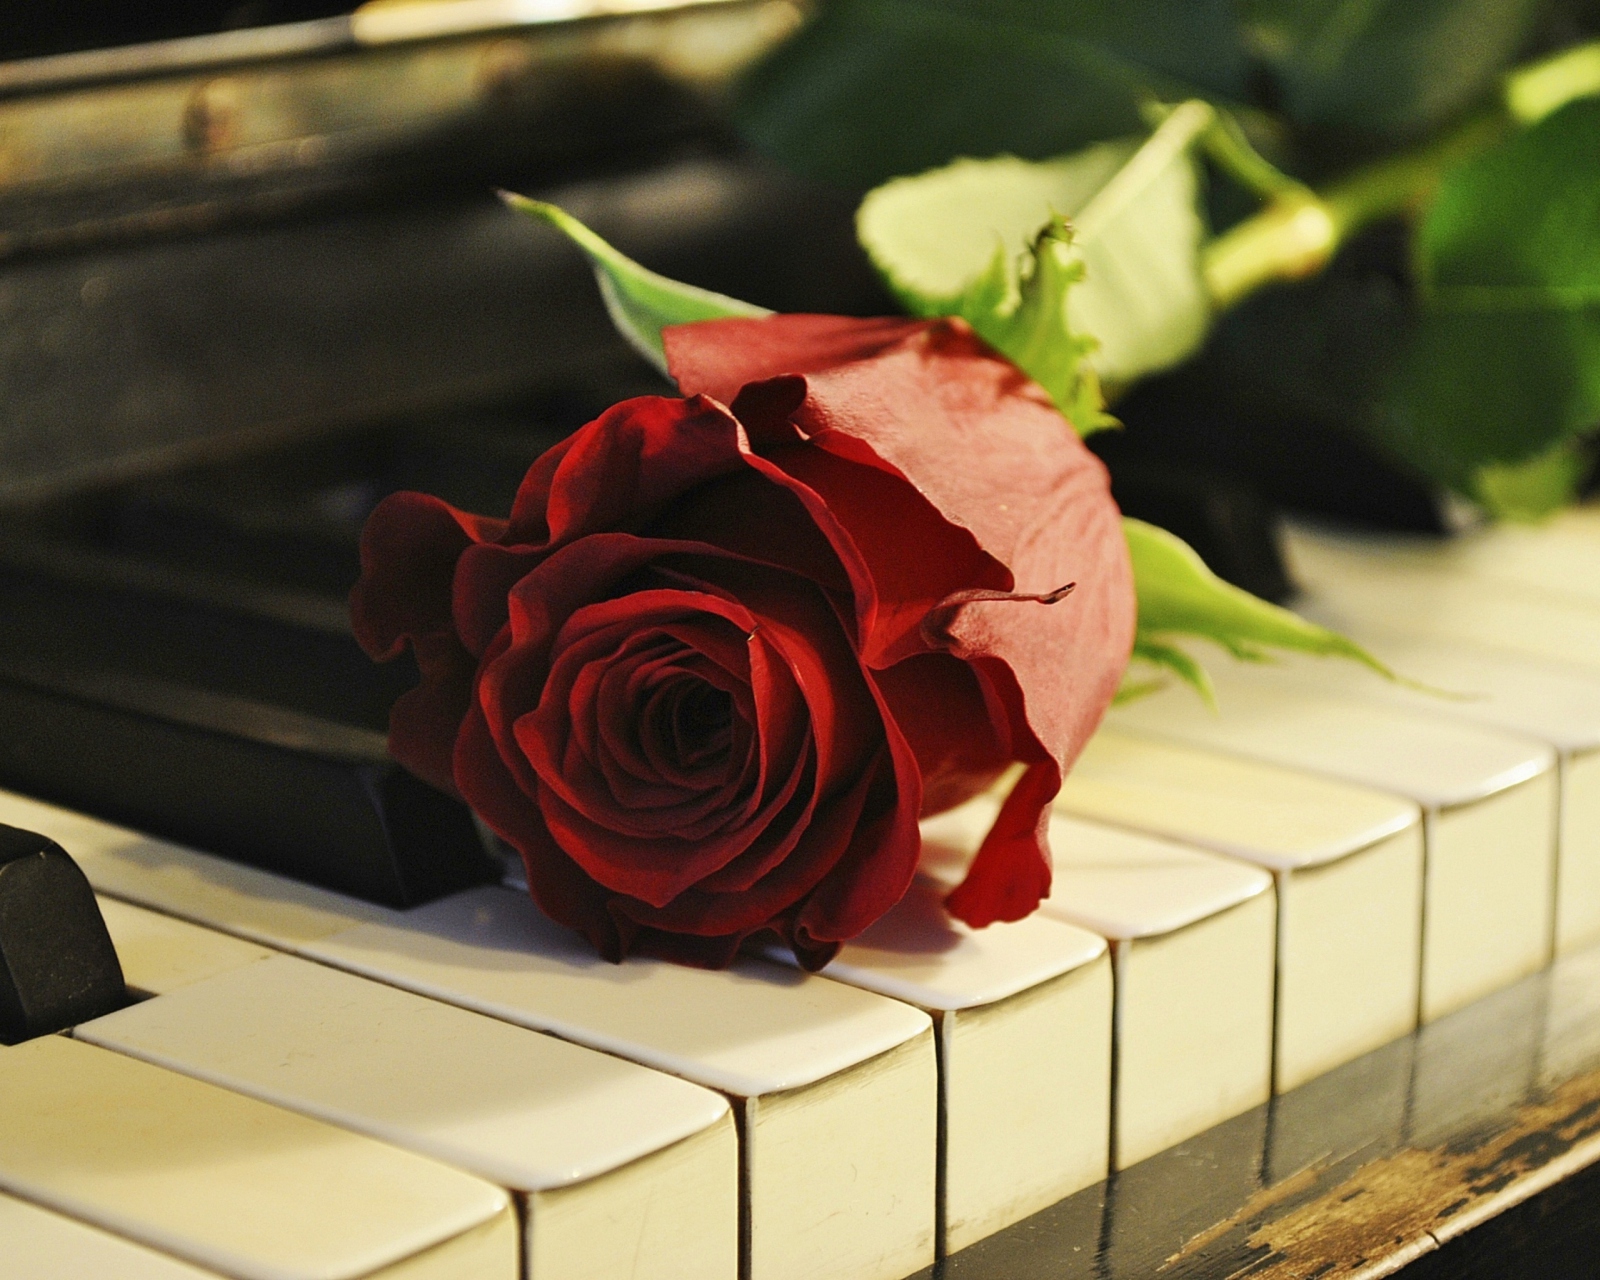 Обои Rose On Piano 1600x1280